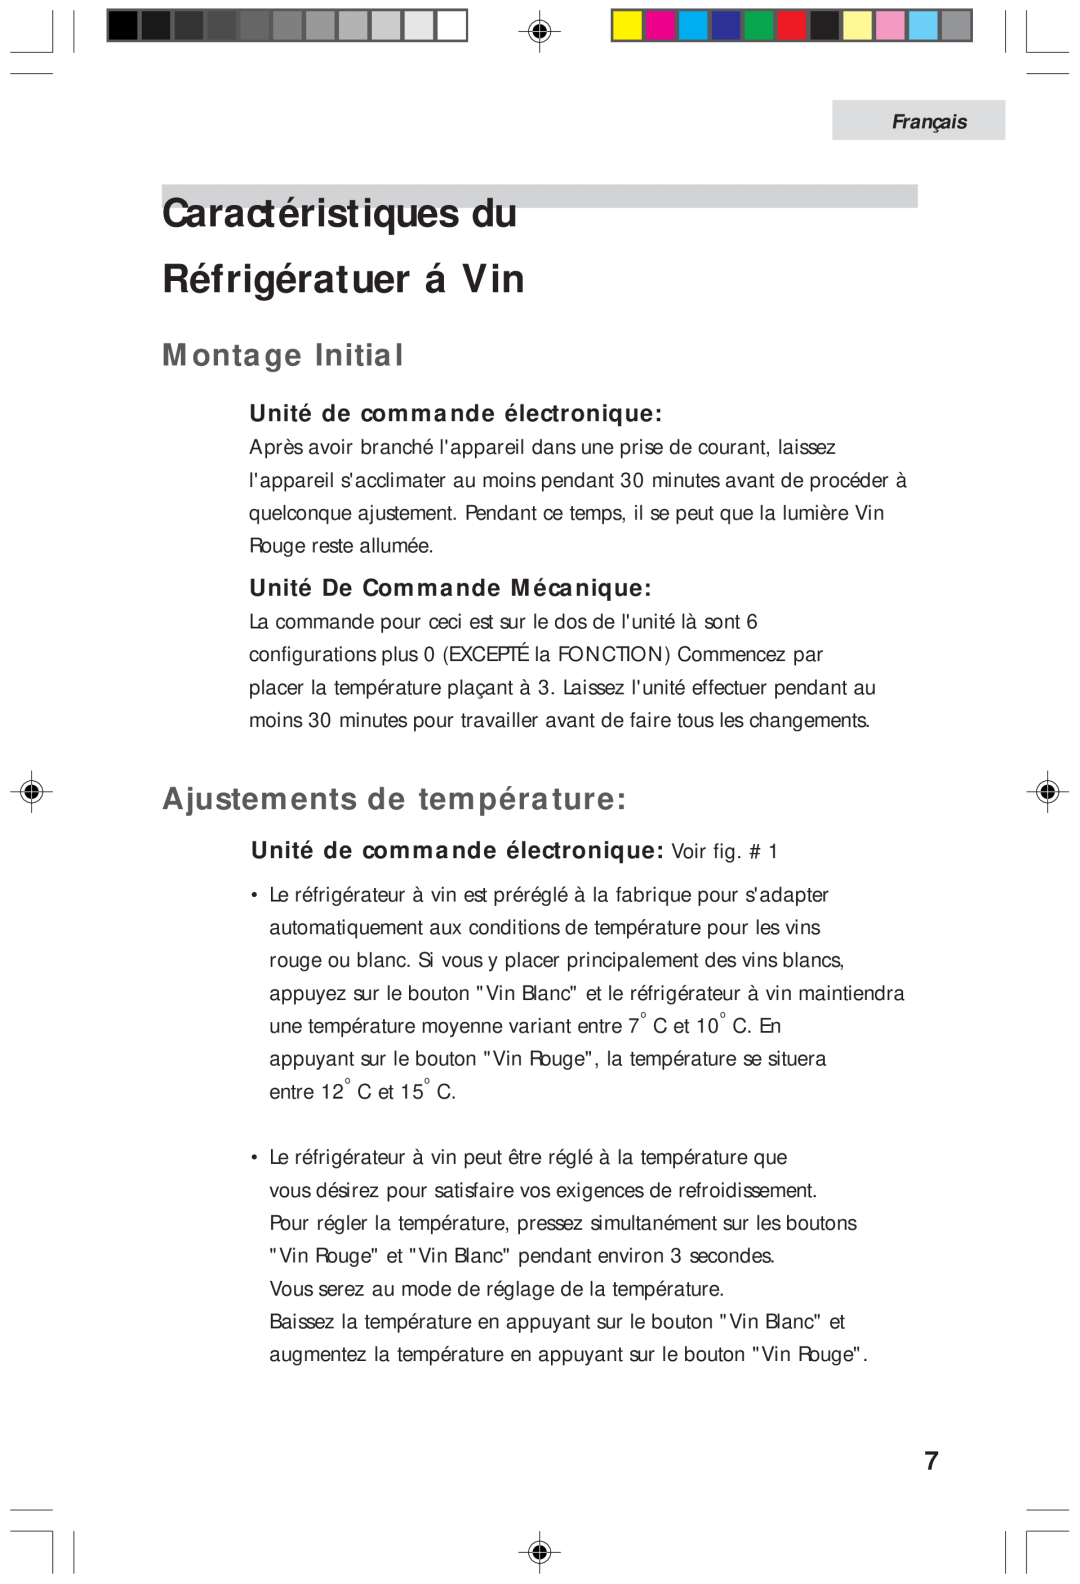 Haier HVFM20A, HVF020A Caractéristiques du Réfrigératuer á Vin, Montage Initial, Ajustements de température, Français 